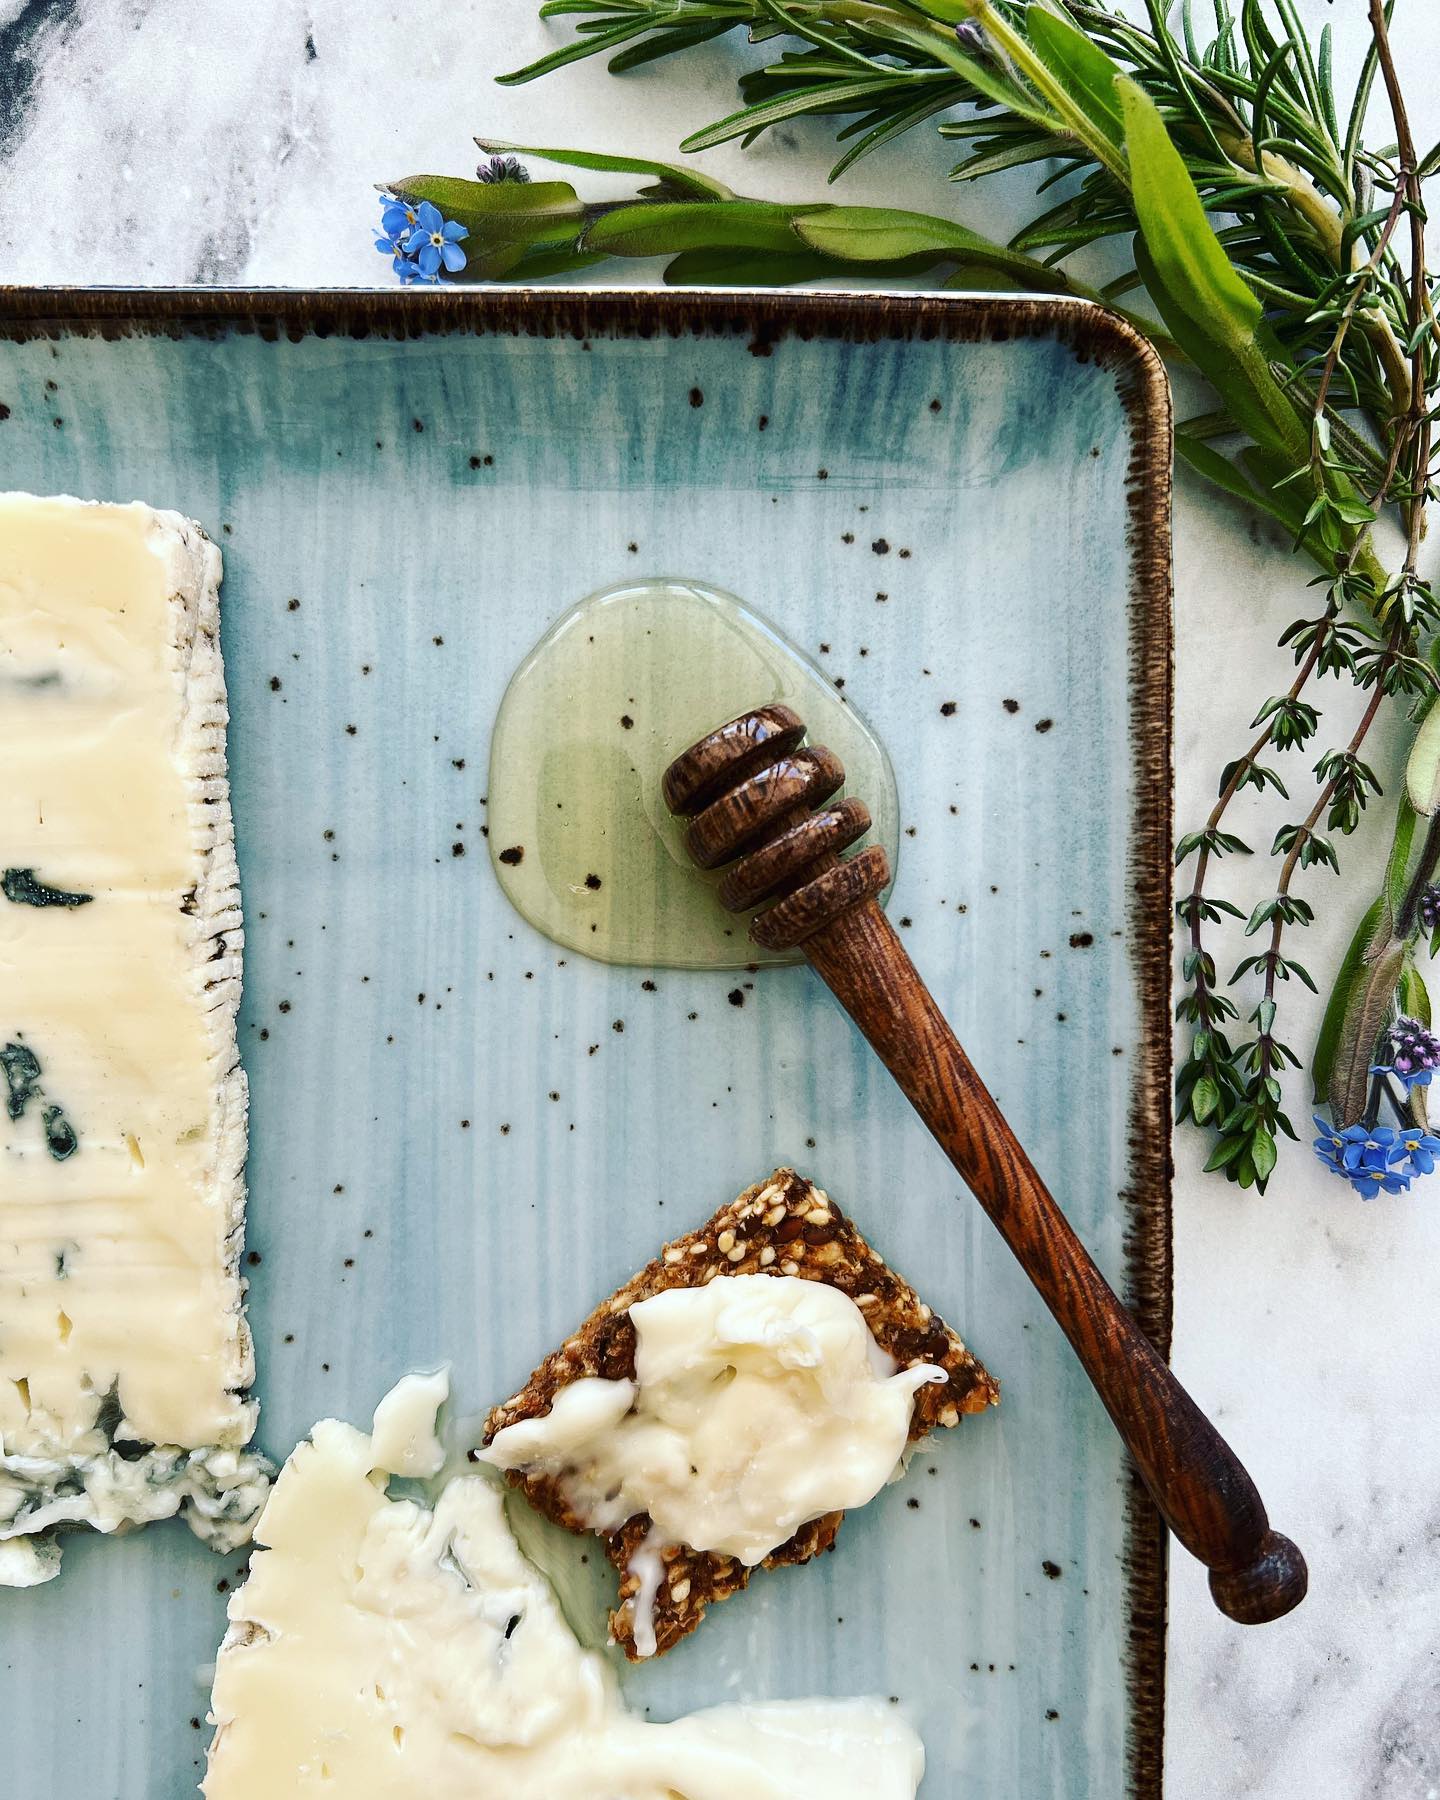 EN SØD VEN
Lidt honning kan gøre underværker for en ost, især hvis man har det lidt stramt med de blå oste. Sødmen dulmer nemlig blåskimmelsmagen. 
Personligt synes jeg også om honning til gedeost…
Hvad synes du?
.
.
.

#ostesnak #cheesetalks #cheese #cheeseislife #cheeselovers #instacheese #cheeseplease #ost #cheeseblogger #foodie #fromage #cheeseblog #foodstylist #cheesephoto #cheesephotography 
#onmytable #onmyplate #cheeseplate #cheeseplatter #ostebord #ostebræt #cheeseboard #gorgonzolacheese #gorgonzola #honeyandcheese